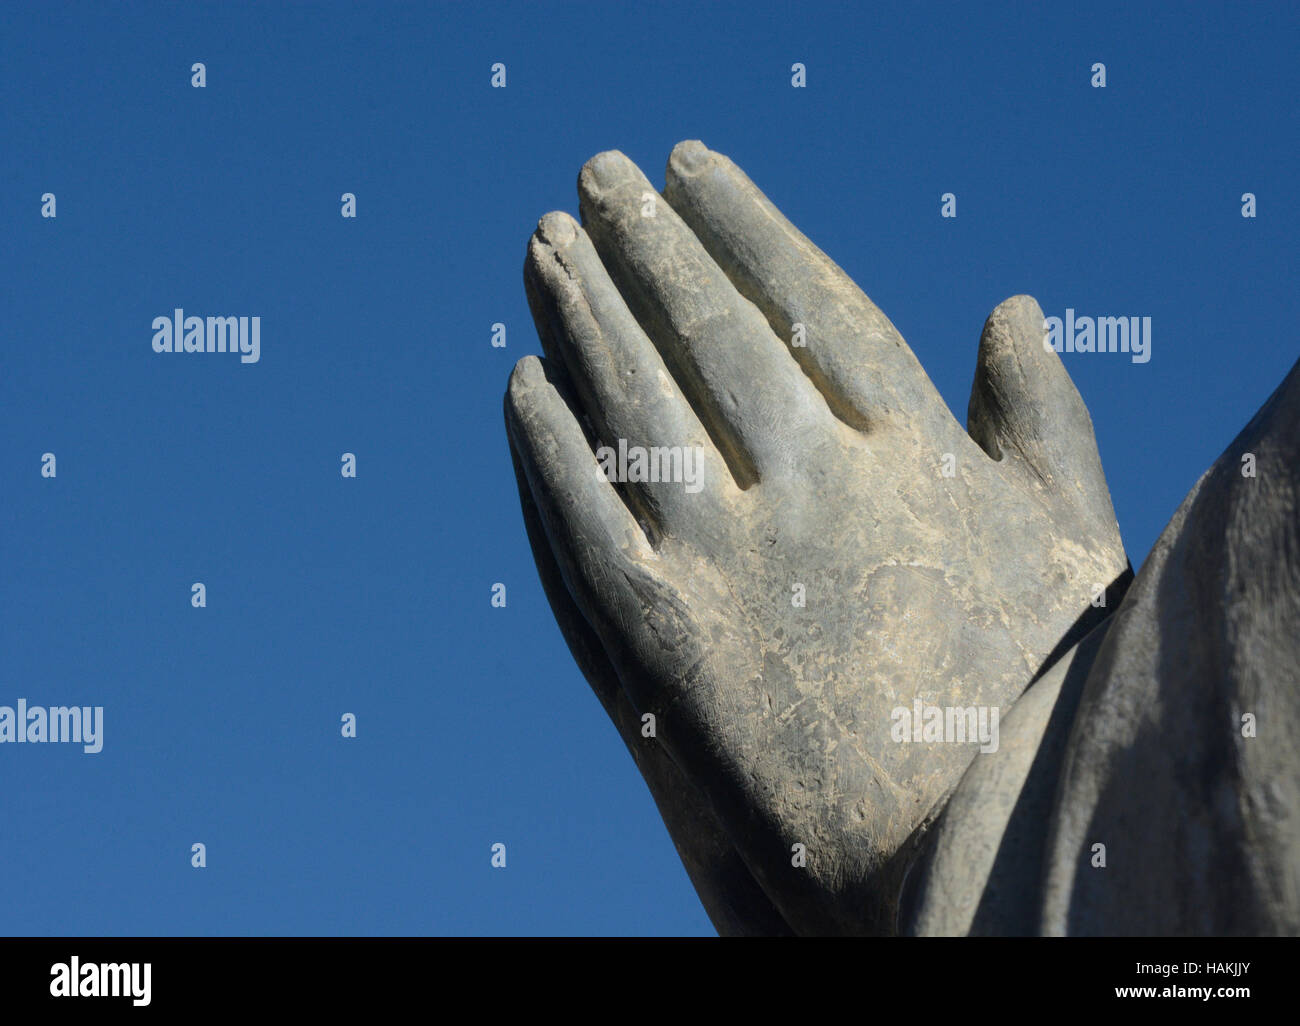 Les mains de pierre dans la prière contre le ciel bleu Banque D'Images